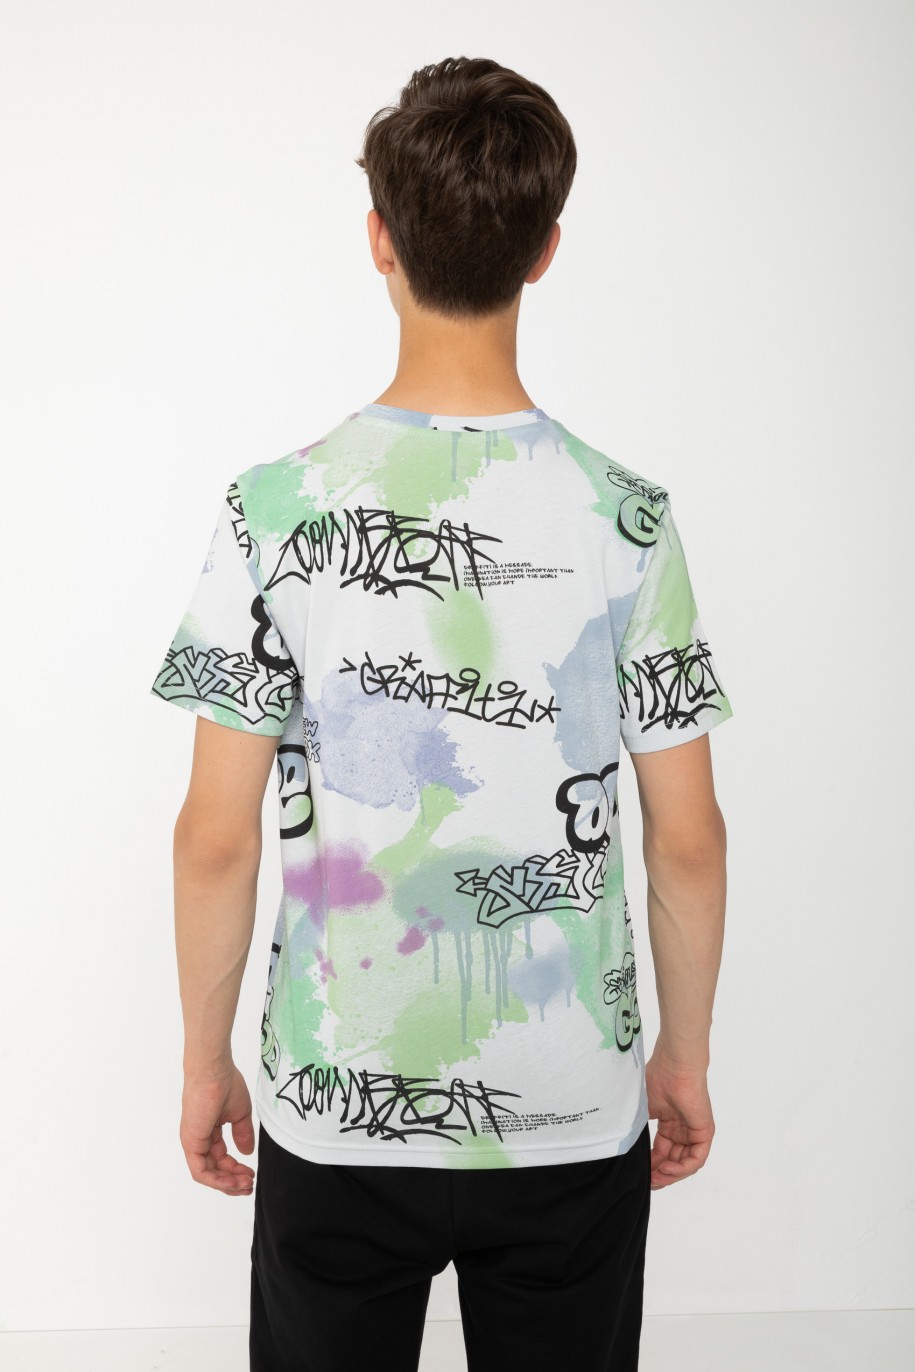 Wielobarwny T-shirt z nadrukami graffiti - 43101